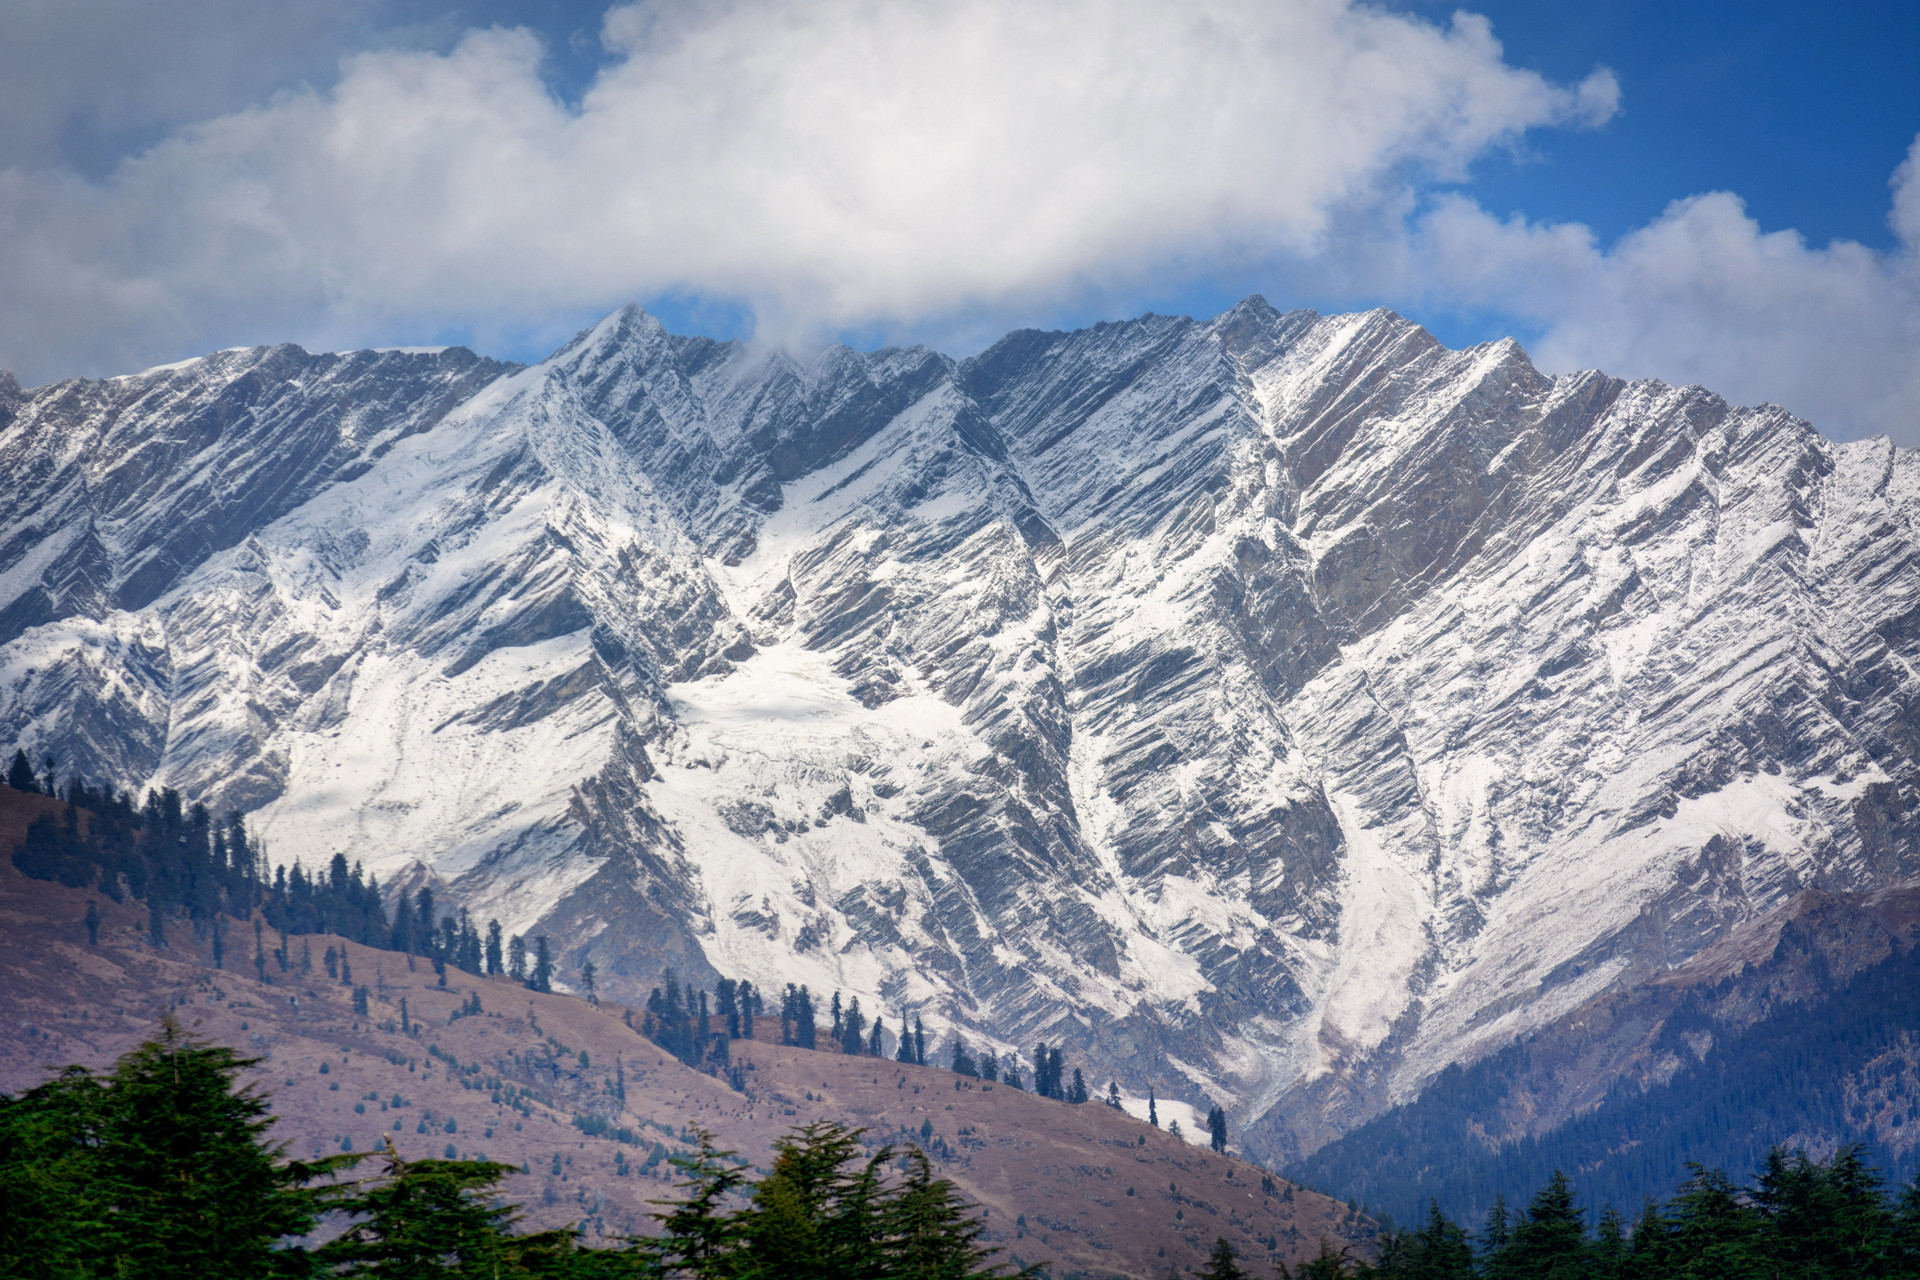 欧洲最高的山脉被多个国家拥有成了著名冰雪运动胜地